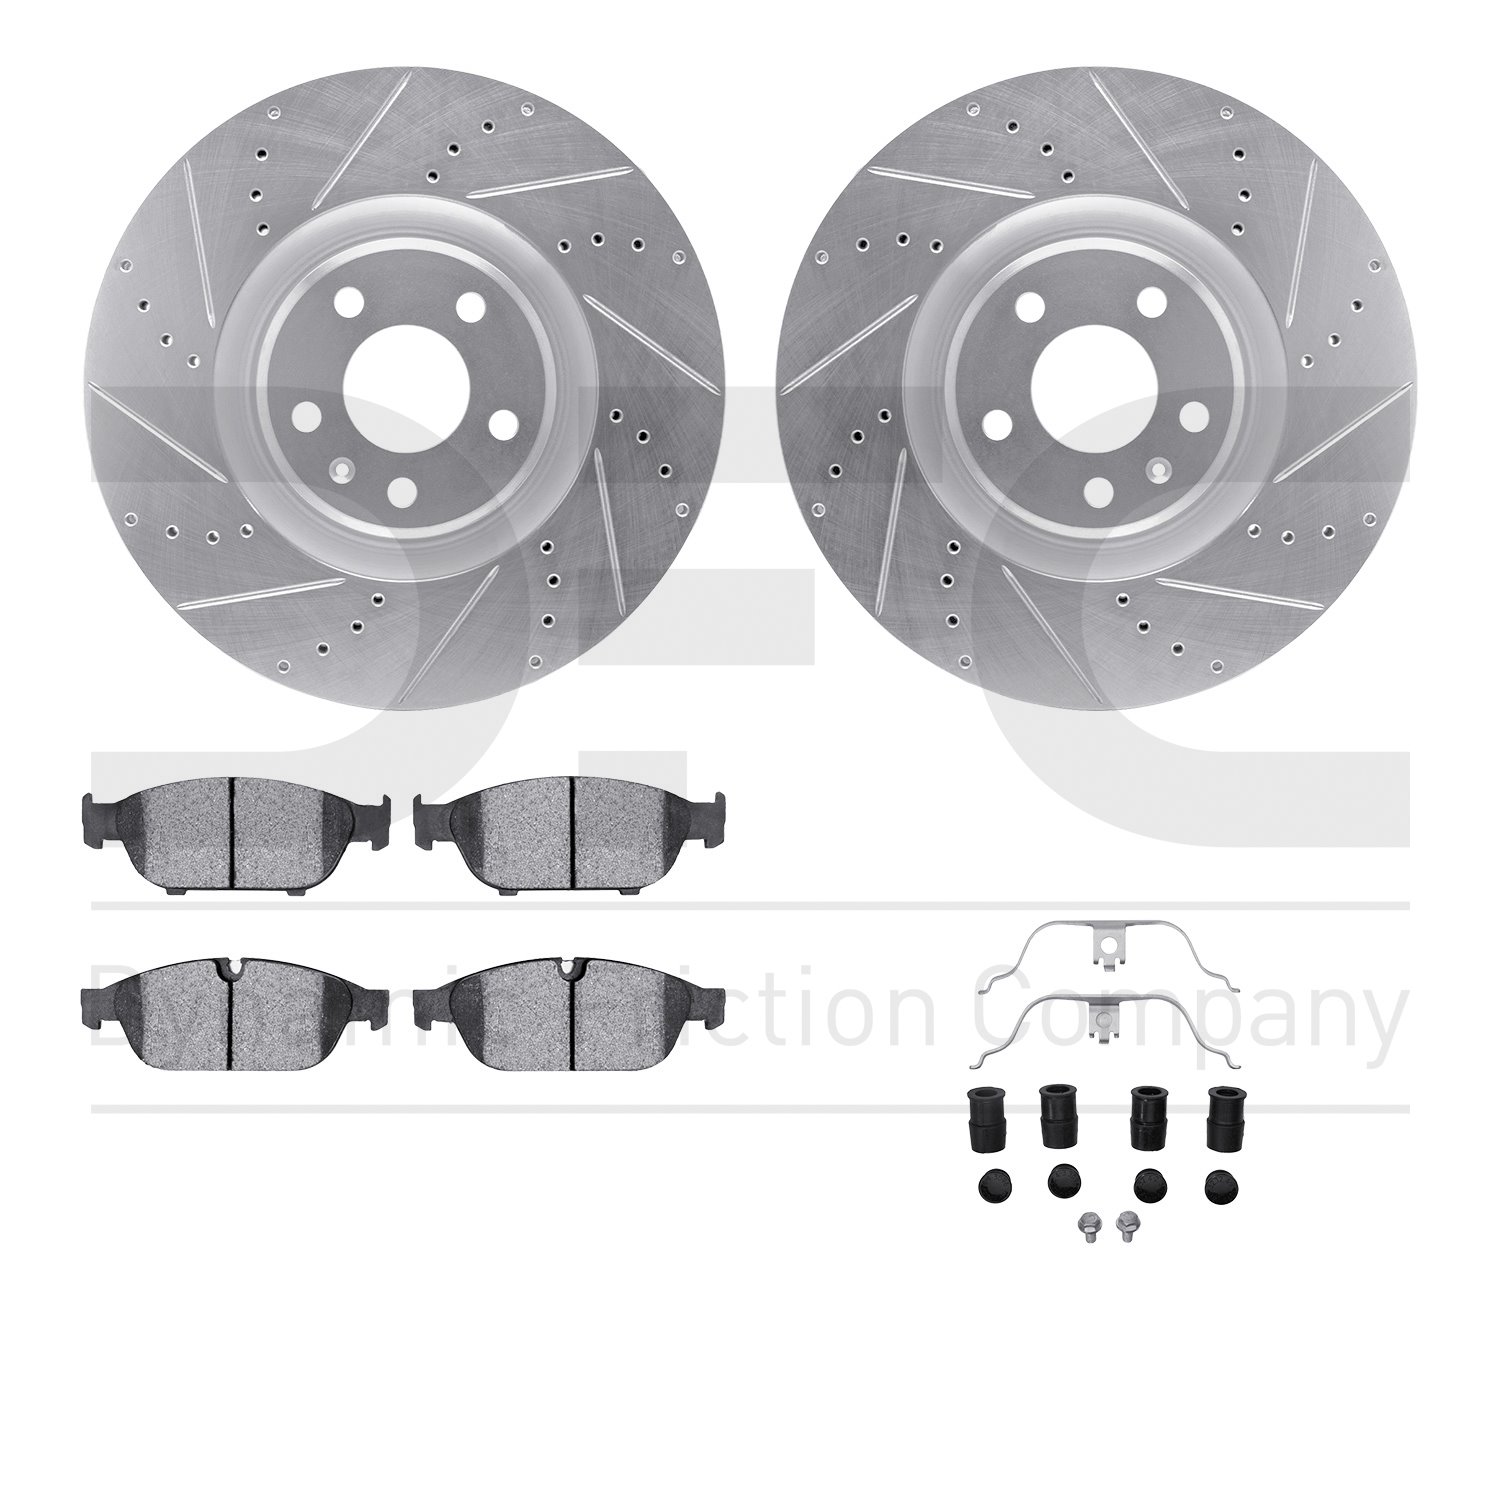 7612-73052 Drilled/Slotted Brake Rotors w/5000 Euro Ceramic Brake Pads Kit & Hardware [Silver], 2012-2018 Audi/Volkswagen, Posit